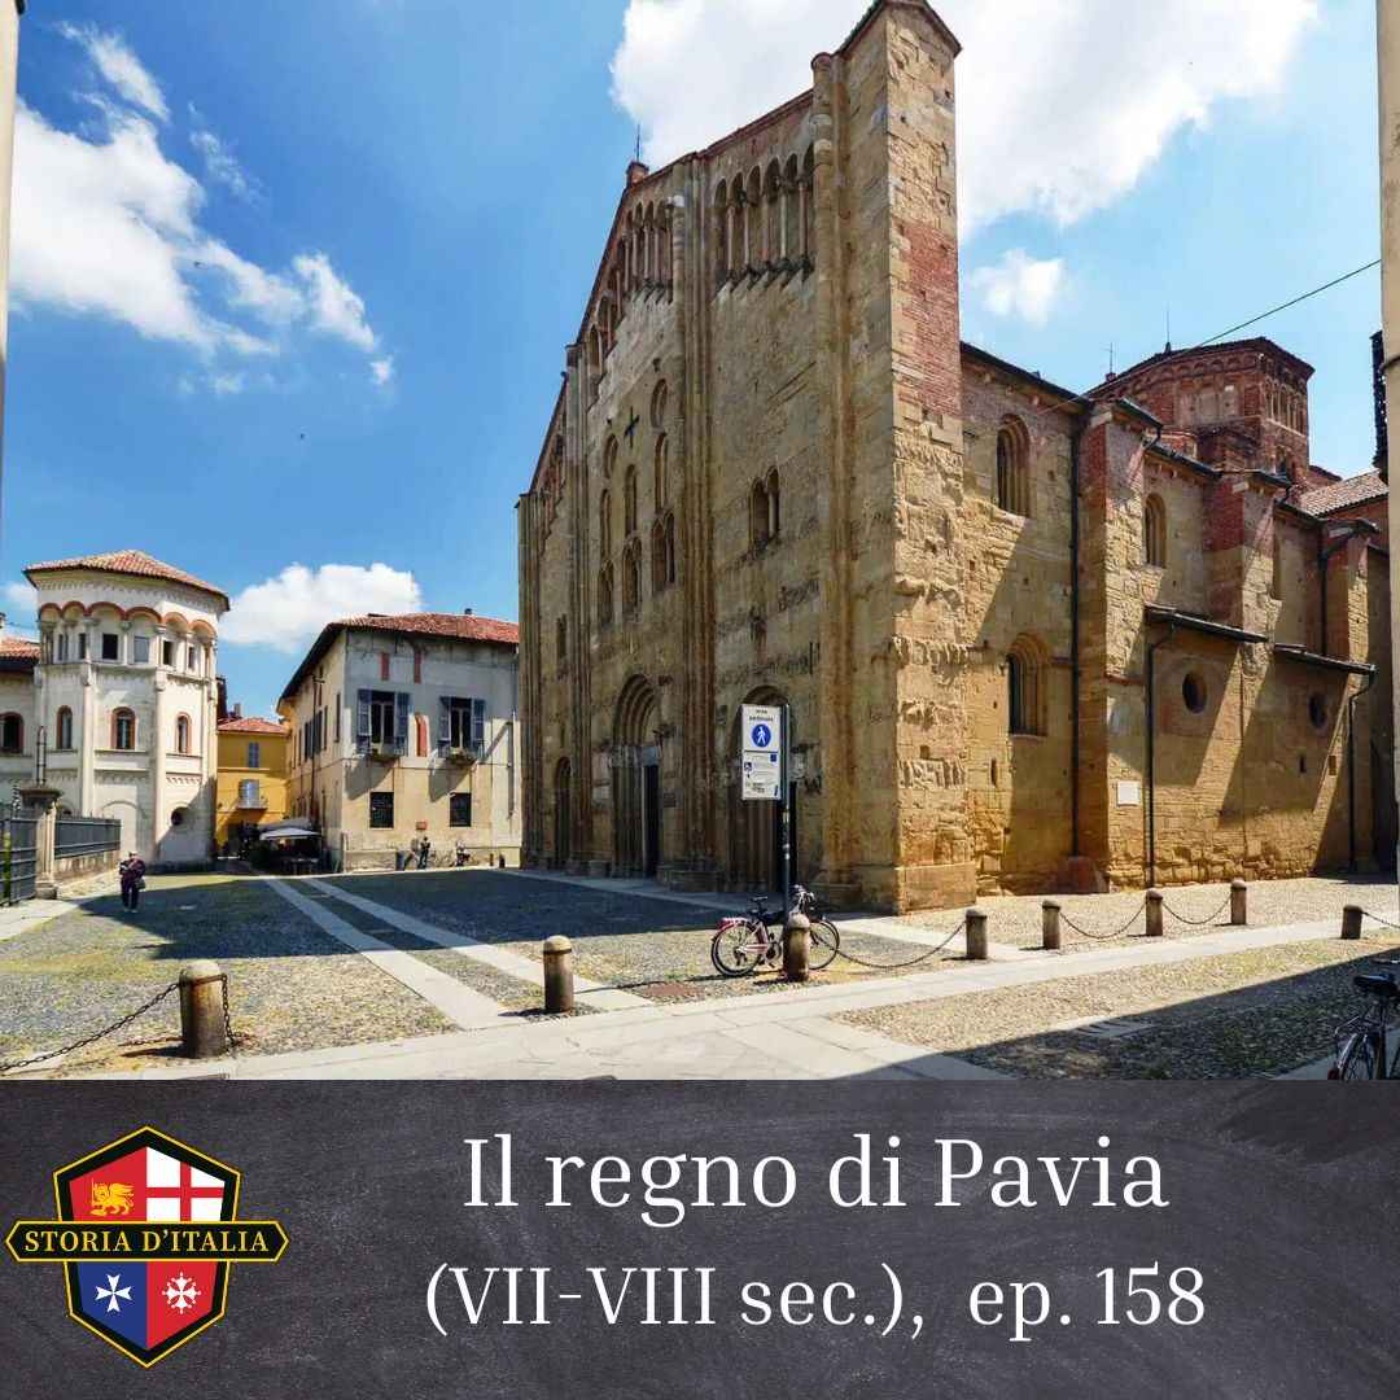 Il regno di Pavia (VII-VIII secolo), ep. 158